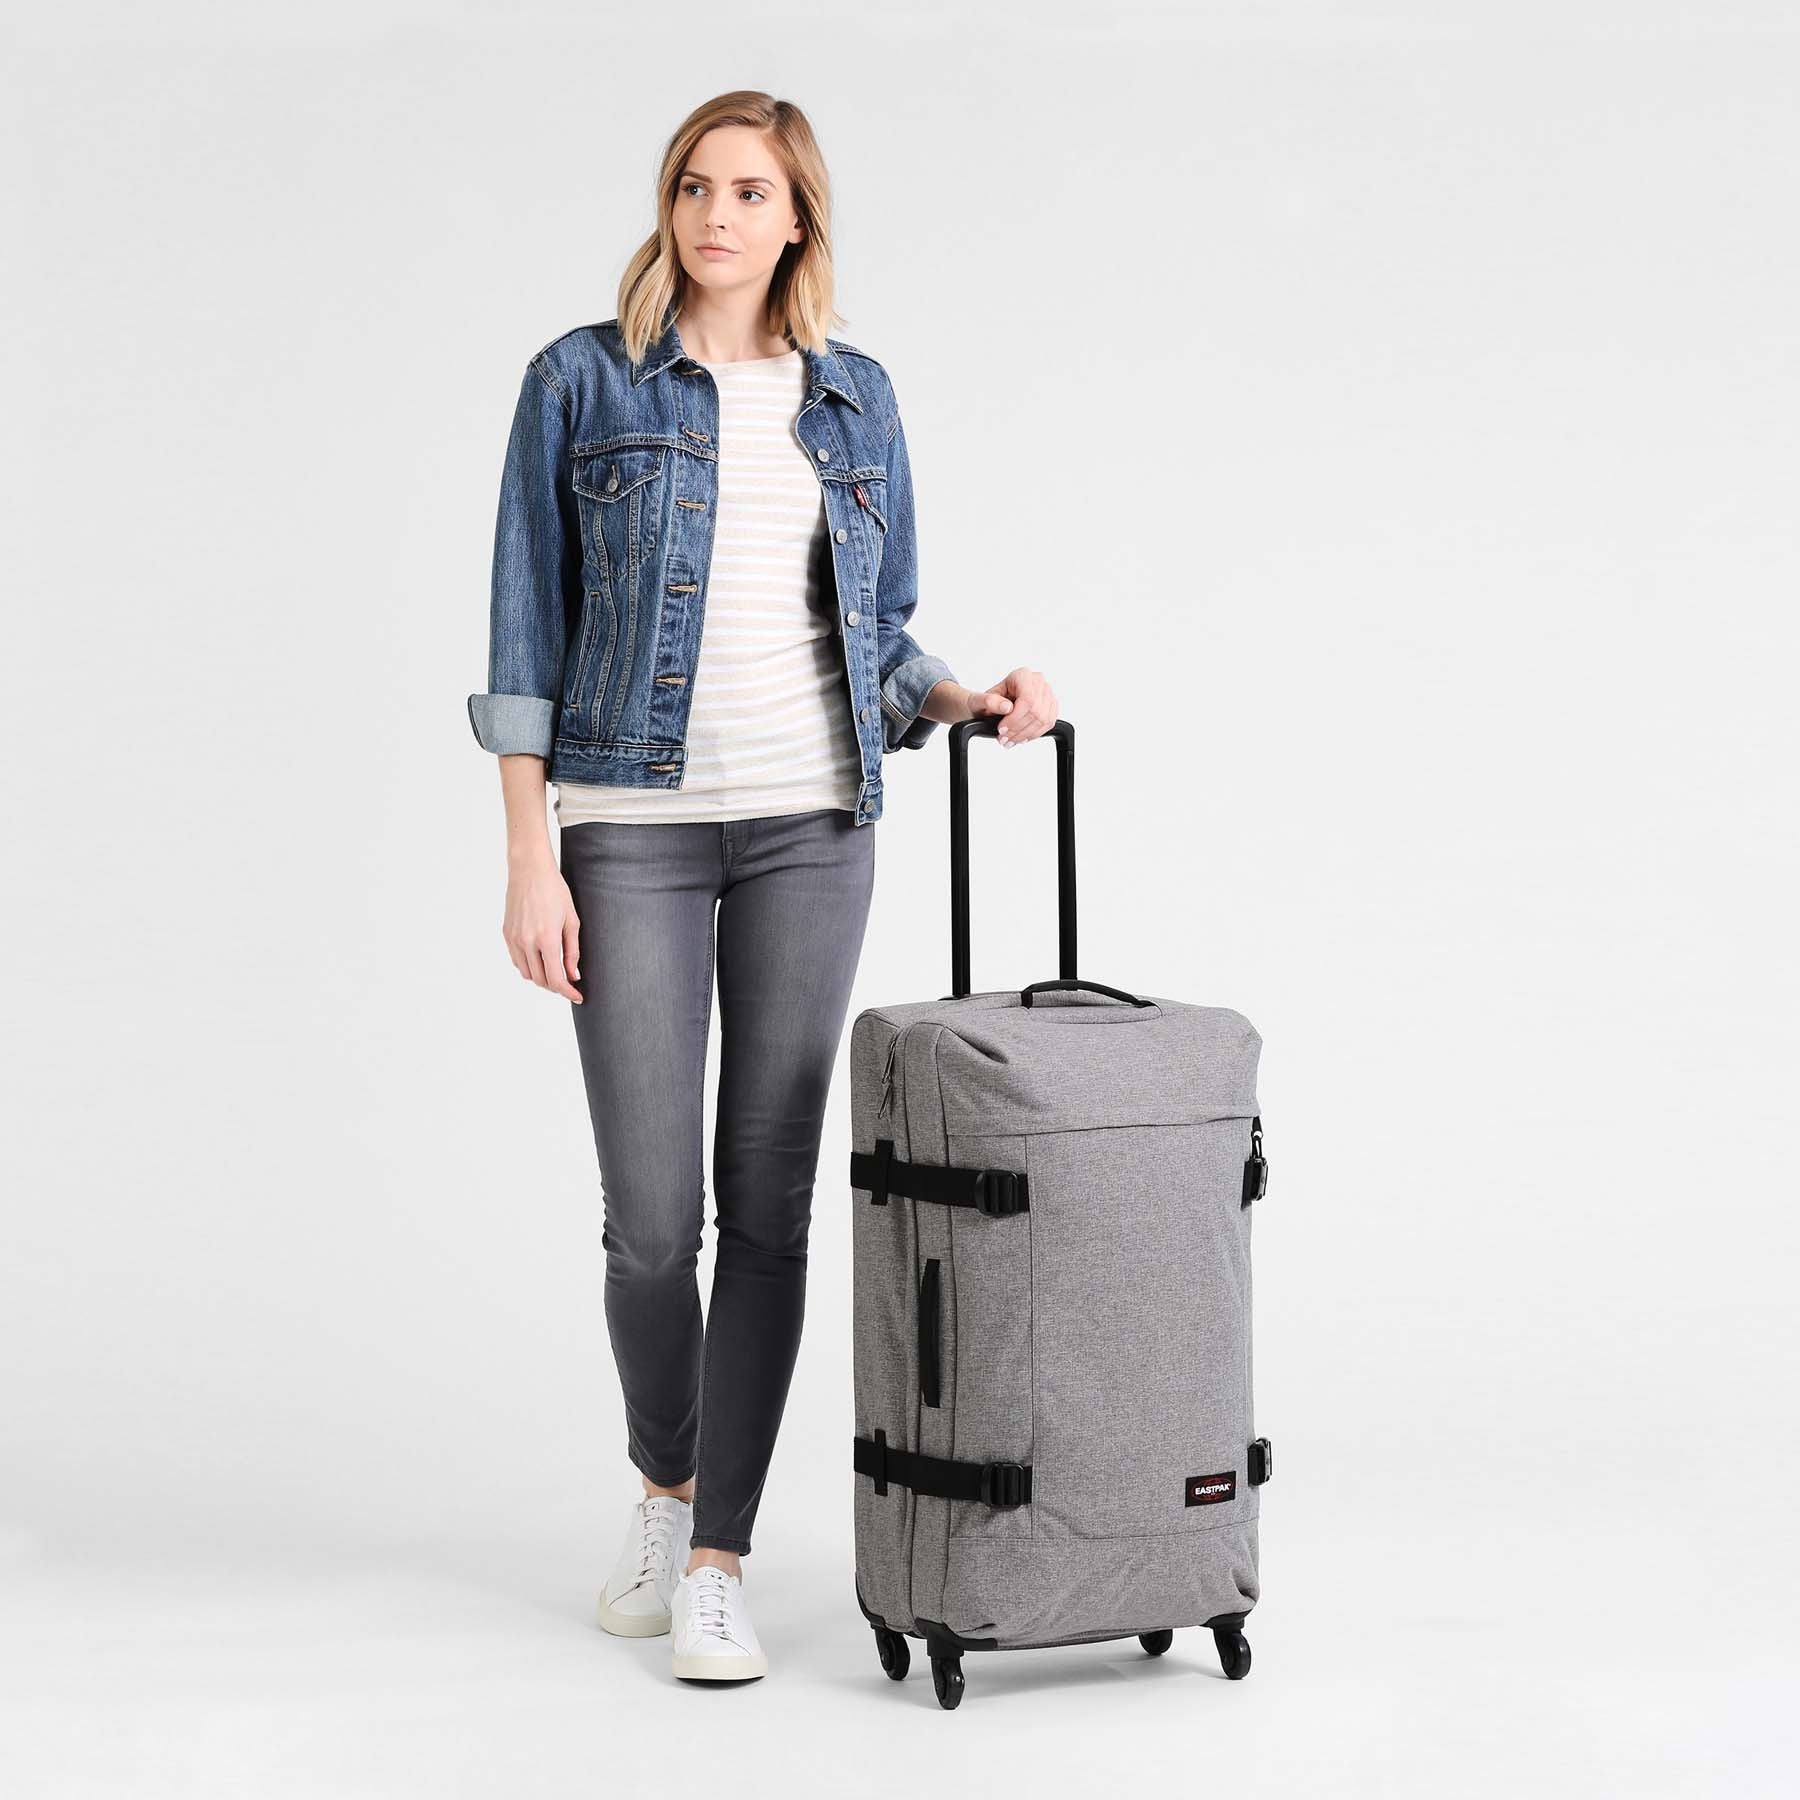 Eastpak Trans4 Large Luggage - Sunday Grey